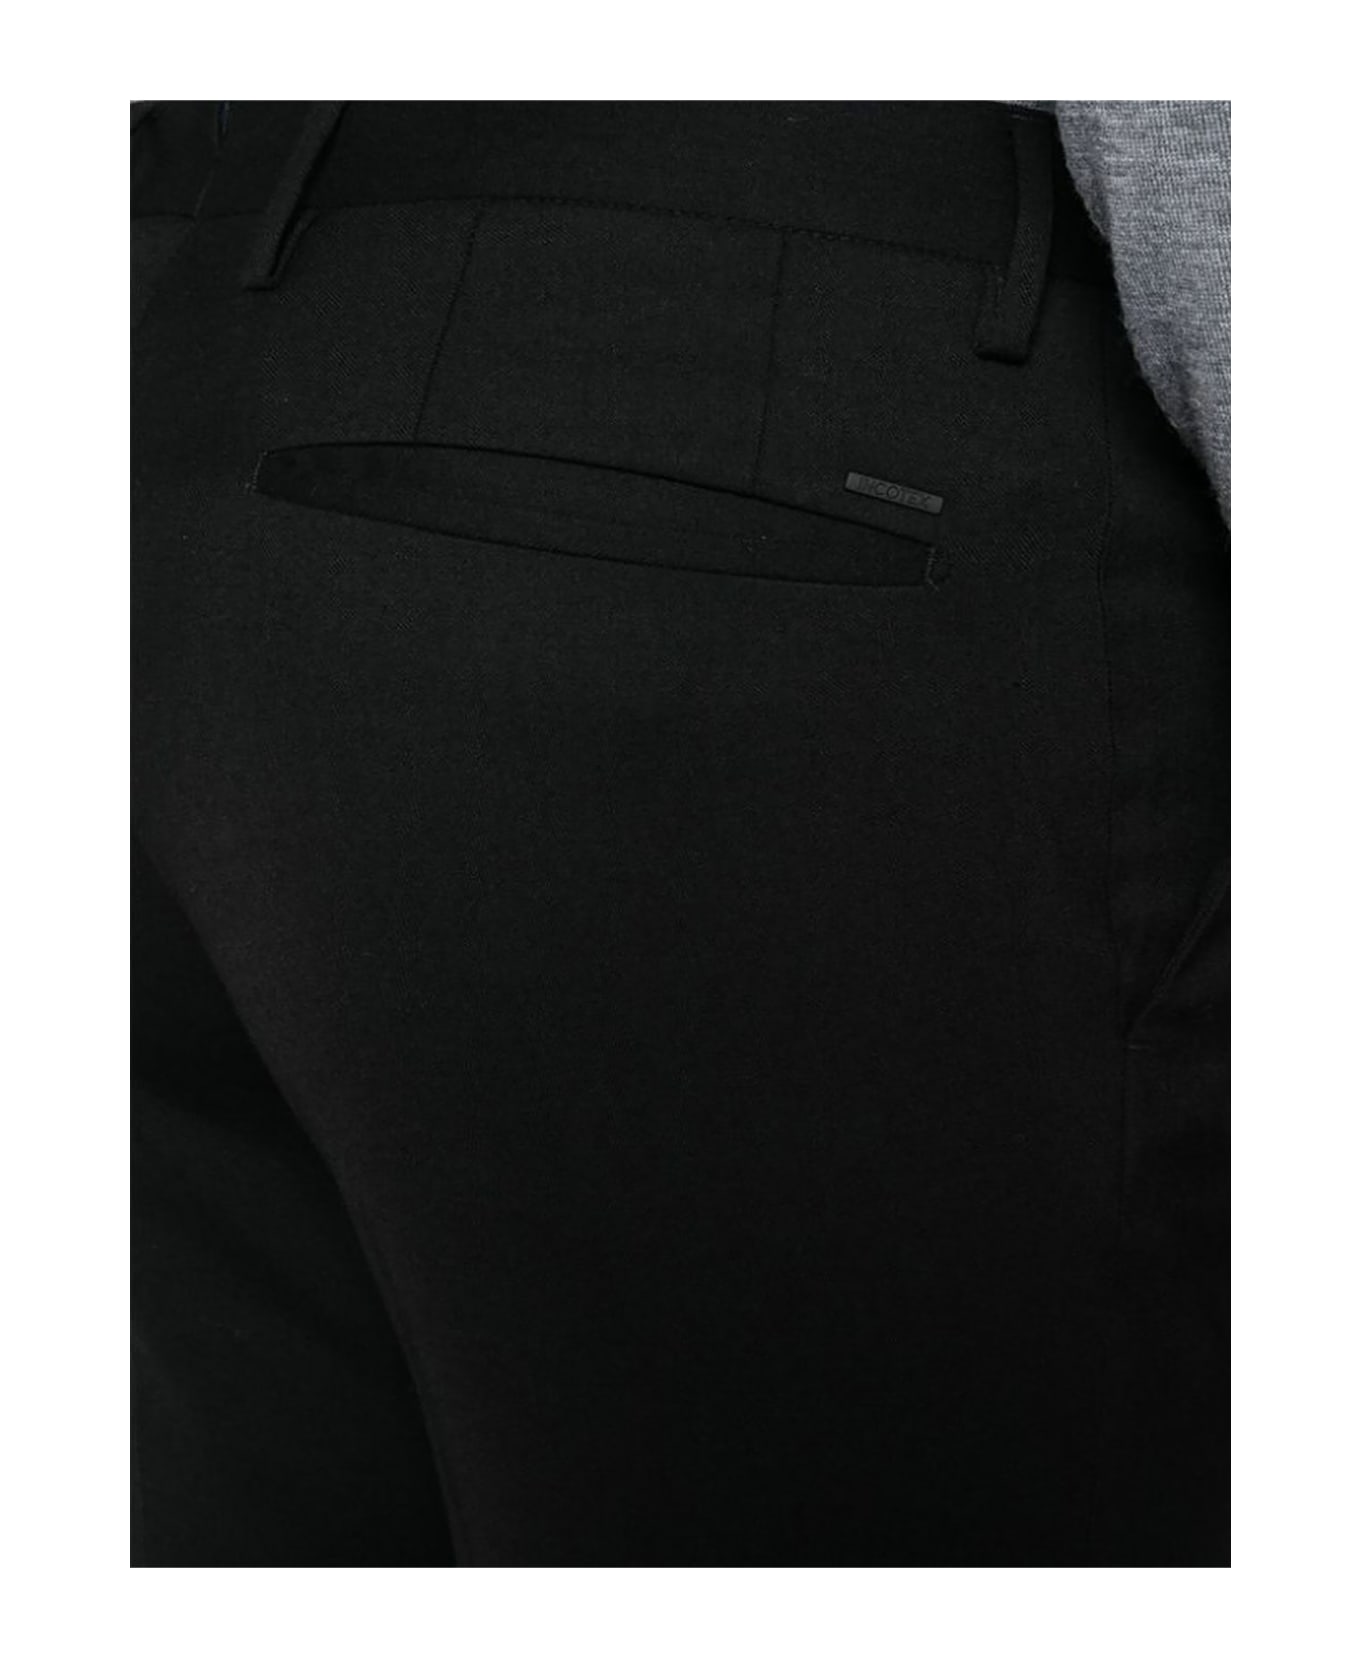 Incotex Black Wool Blend Trousers - Black ボトムス